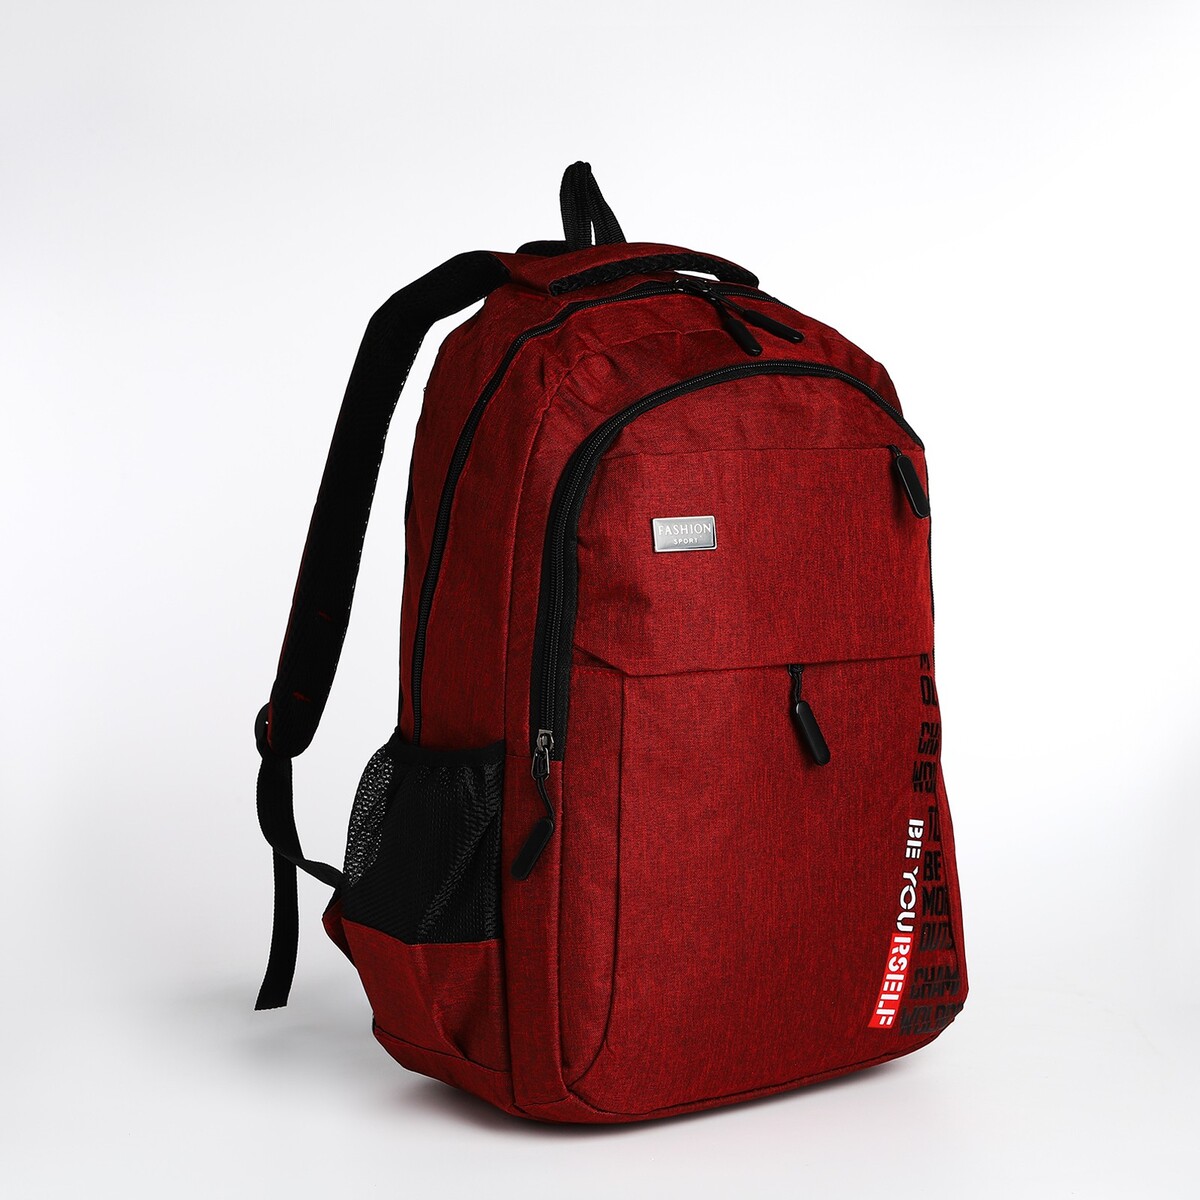 Рюкзак молодежный на молнии, 4 кармана, цвет бордовый рюкзак классики 28 11 38 см 1 отд на молнии 4 н кармана бордовый